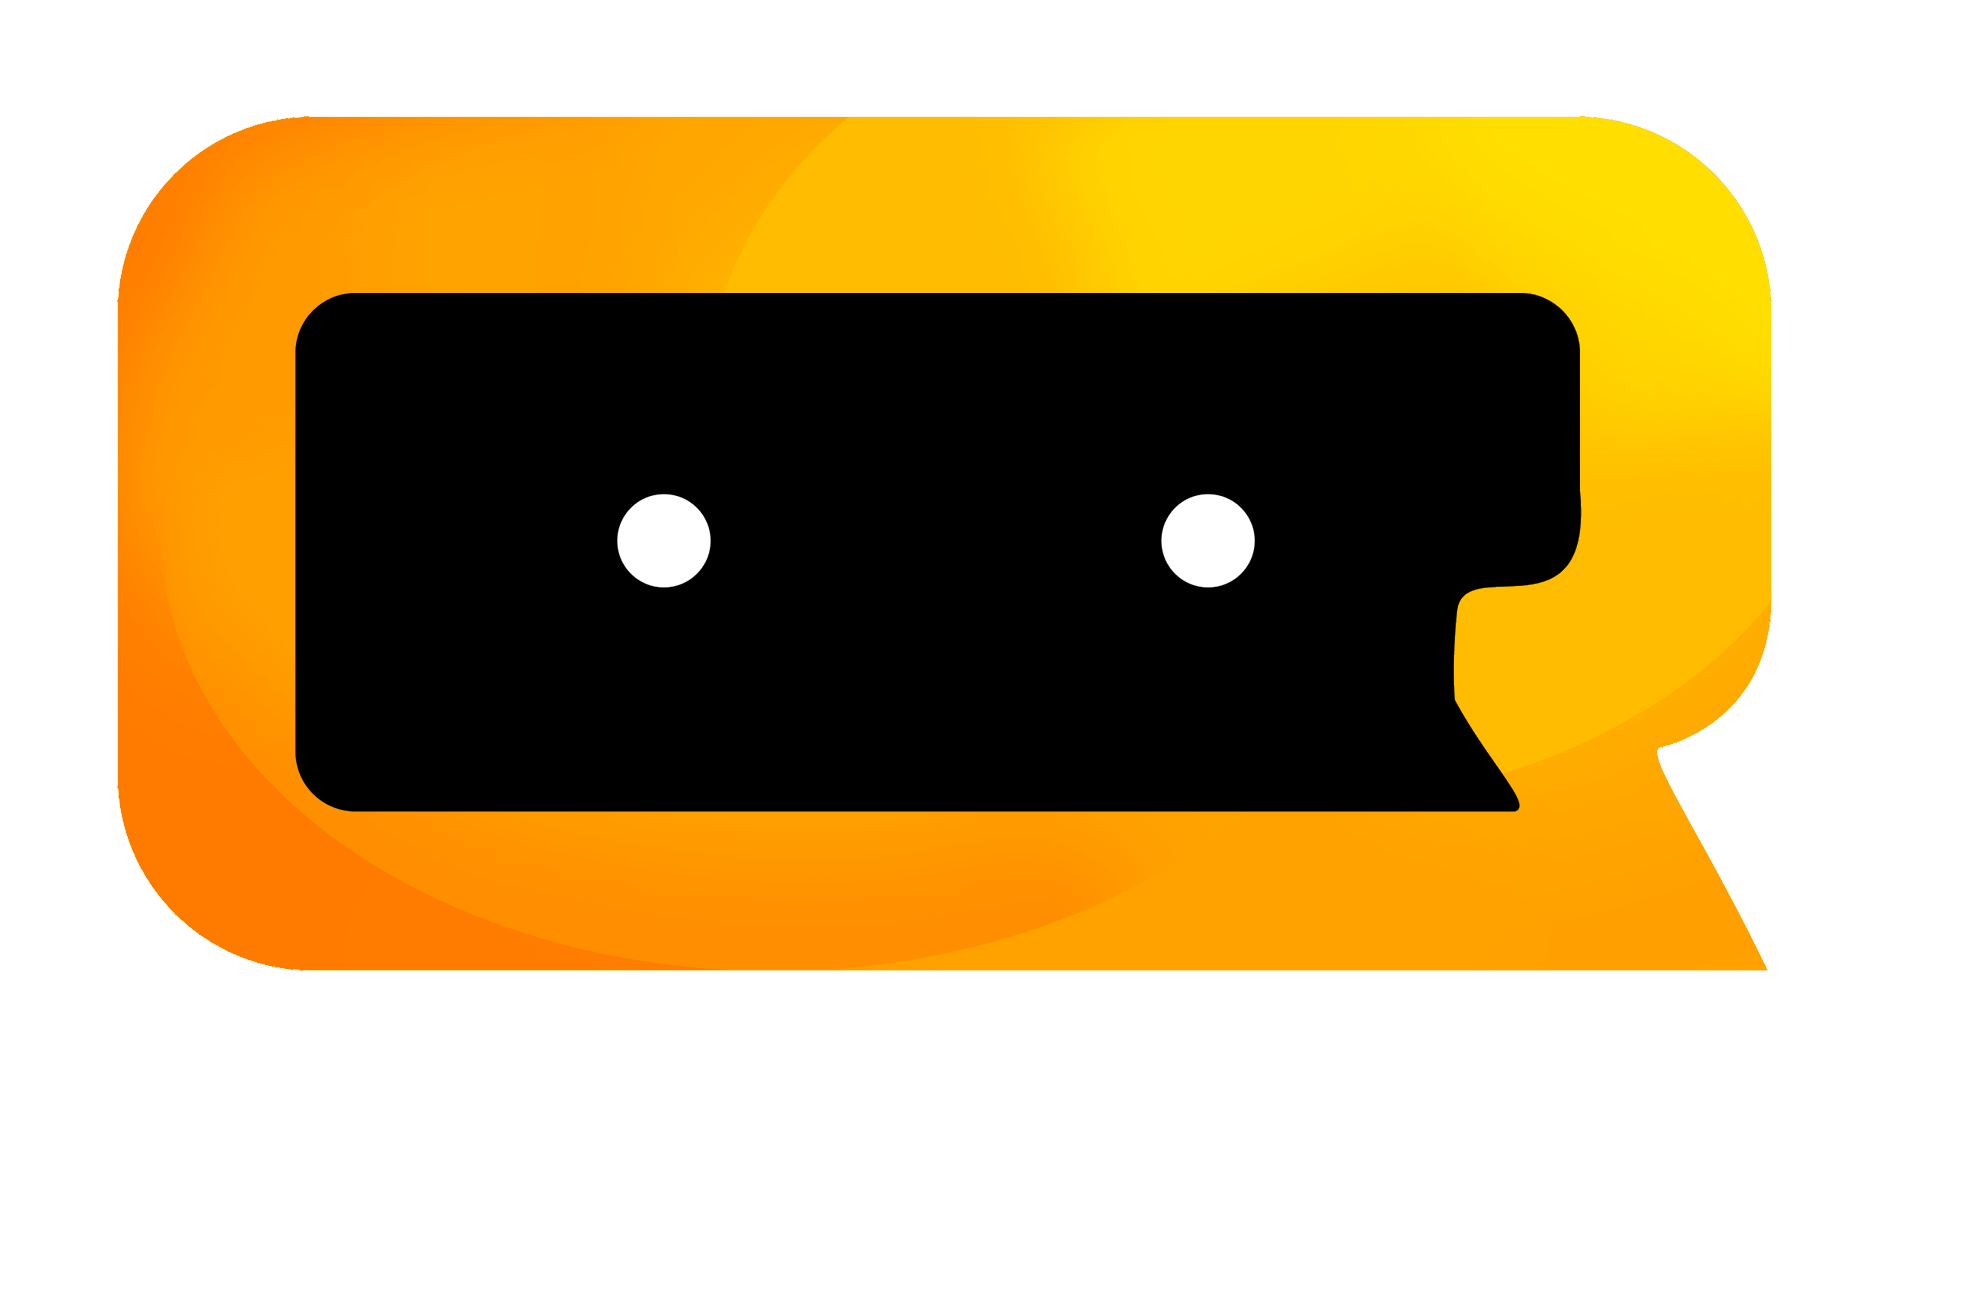 CReatures